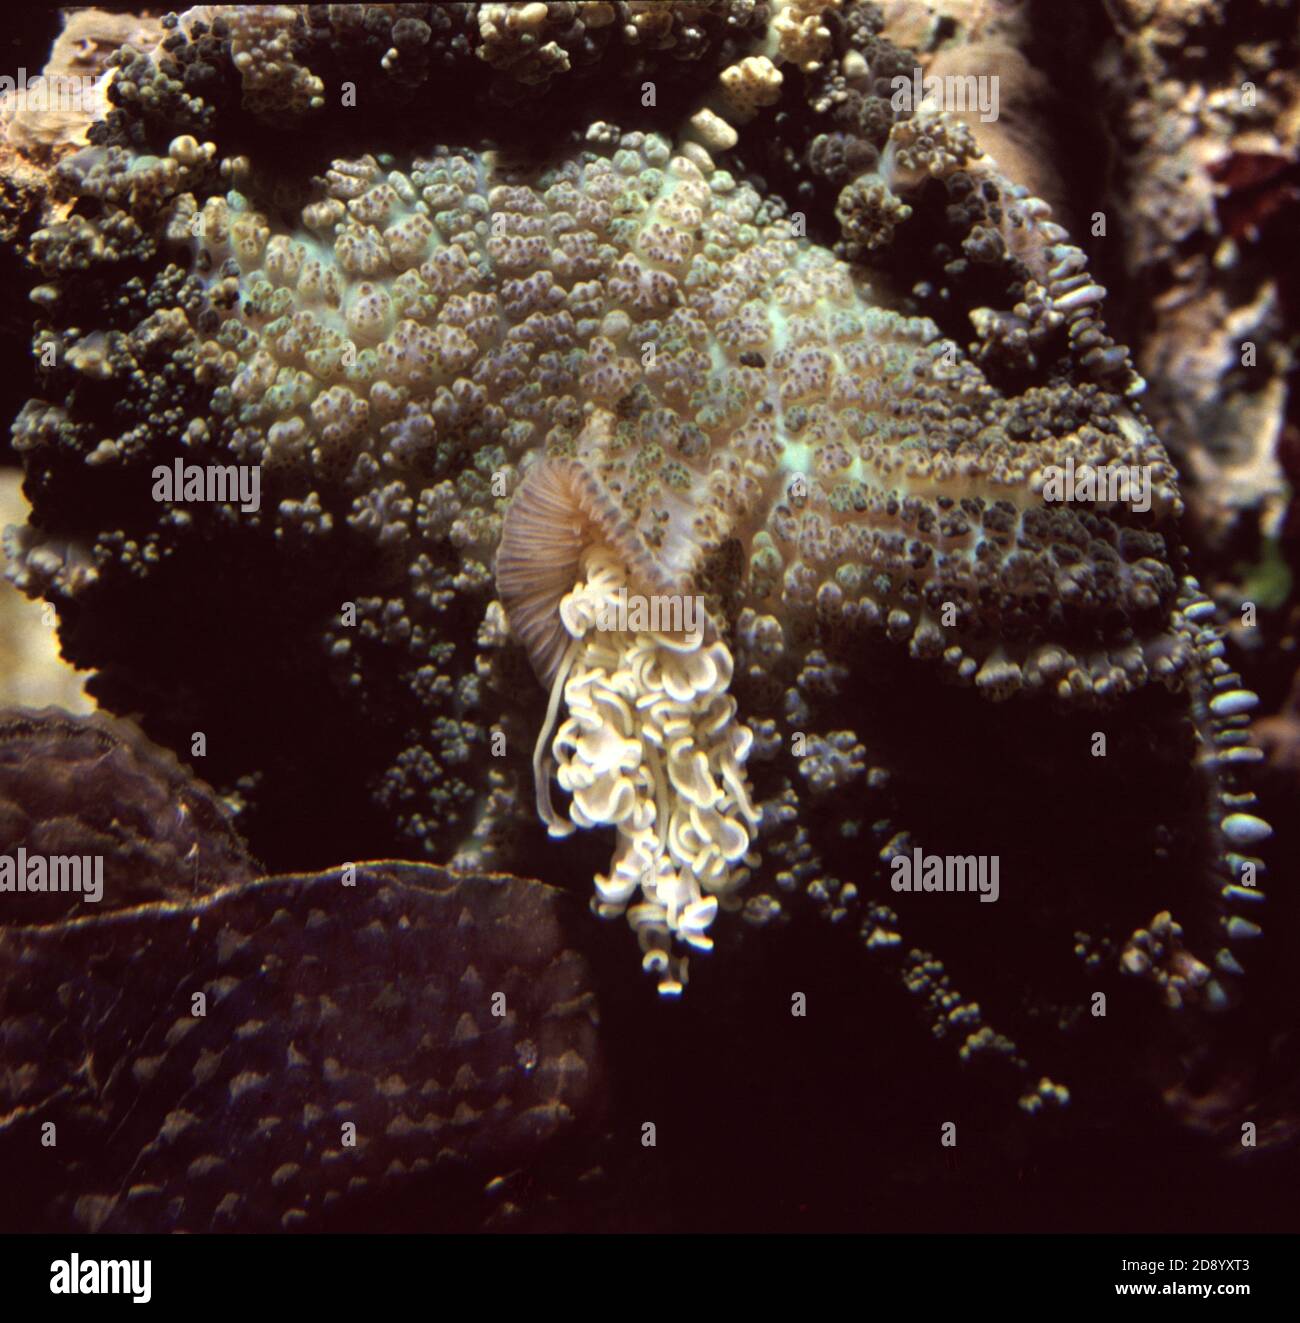 Reazione difensiva nel Discosoma sp. Corallo dei funghi (Corallimorpharia): Espulsione di filamenti mesenterici tossici Foto Stock